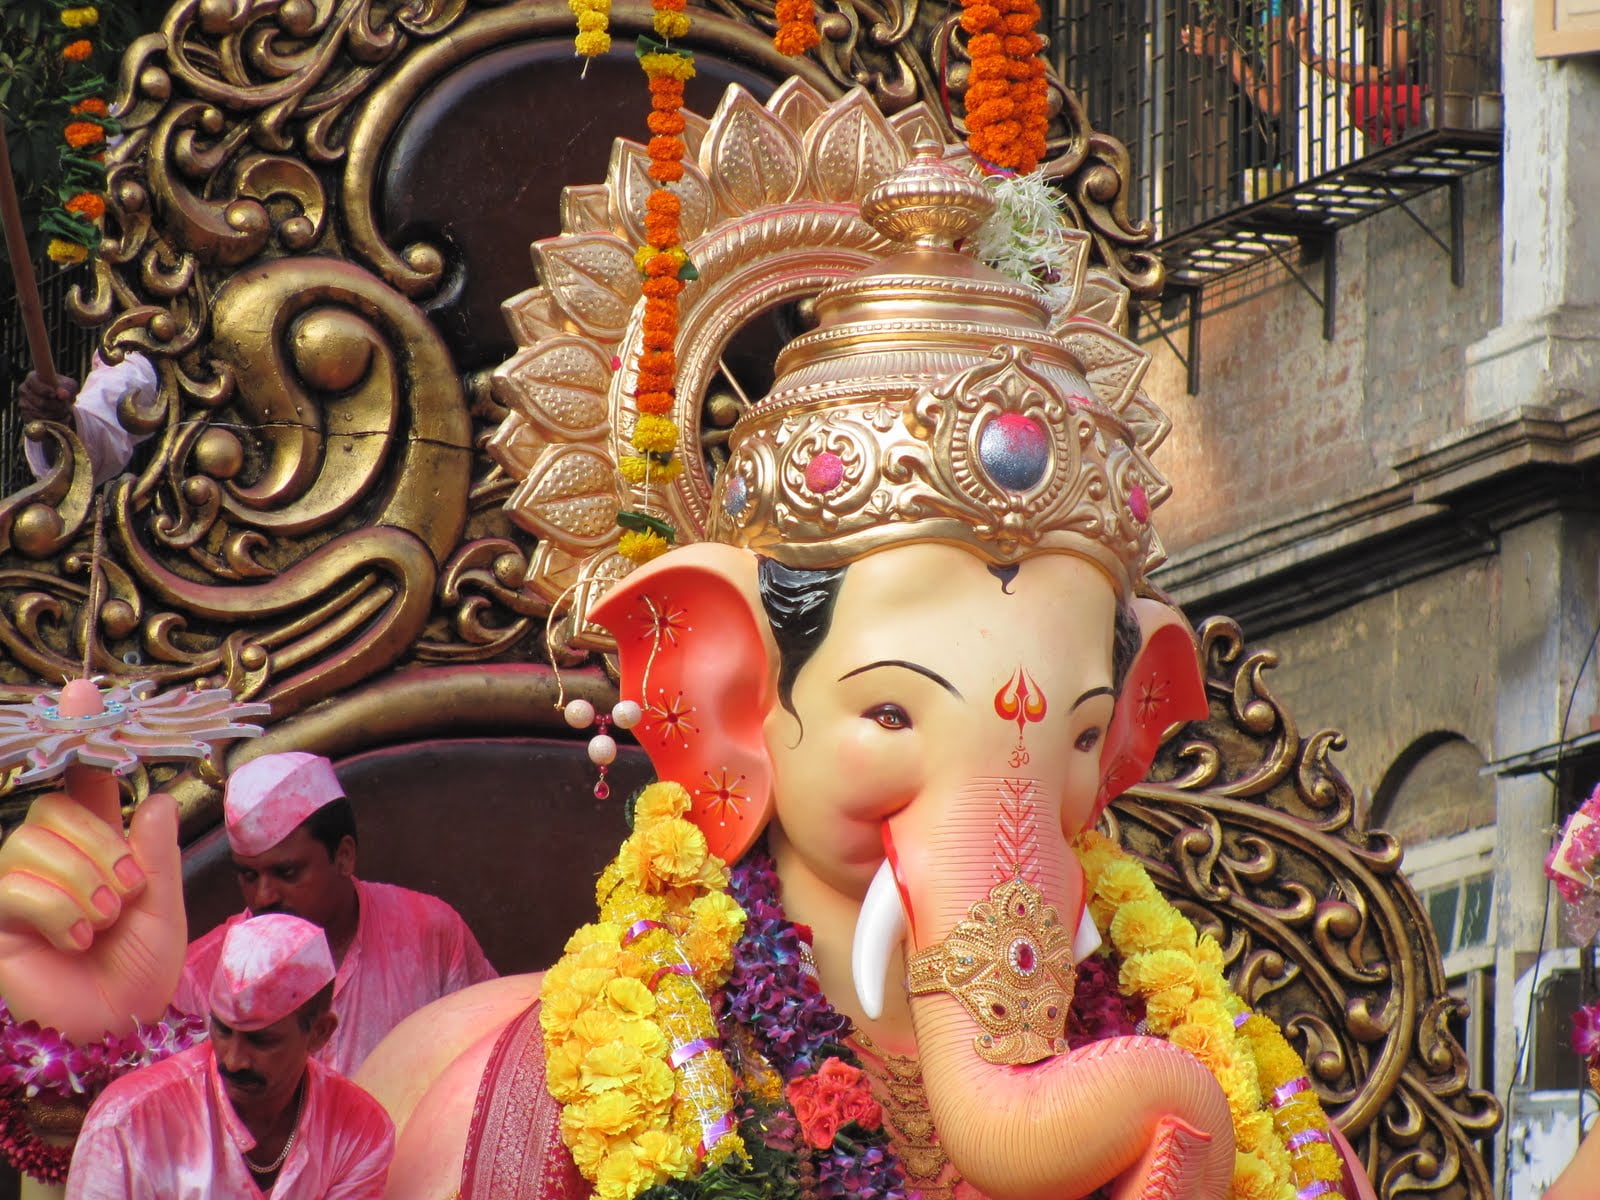 Ganesh Chaturthi Celebration, Lord Ganesha figurine, Festivals / Holidays